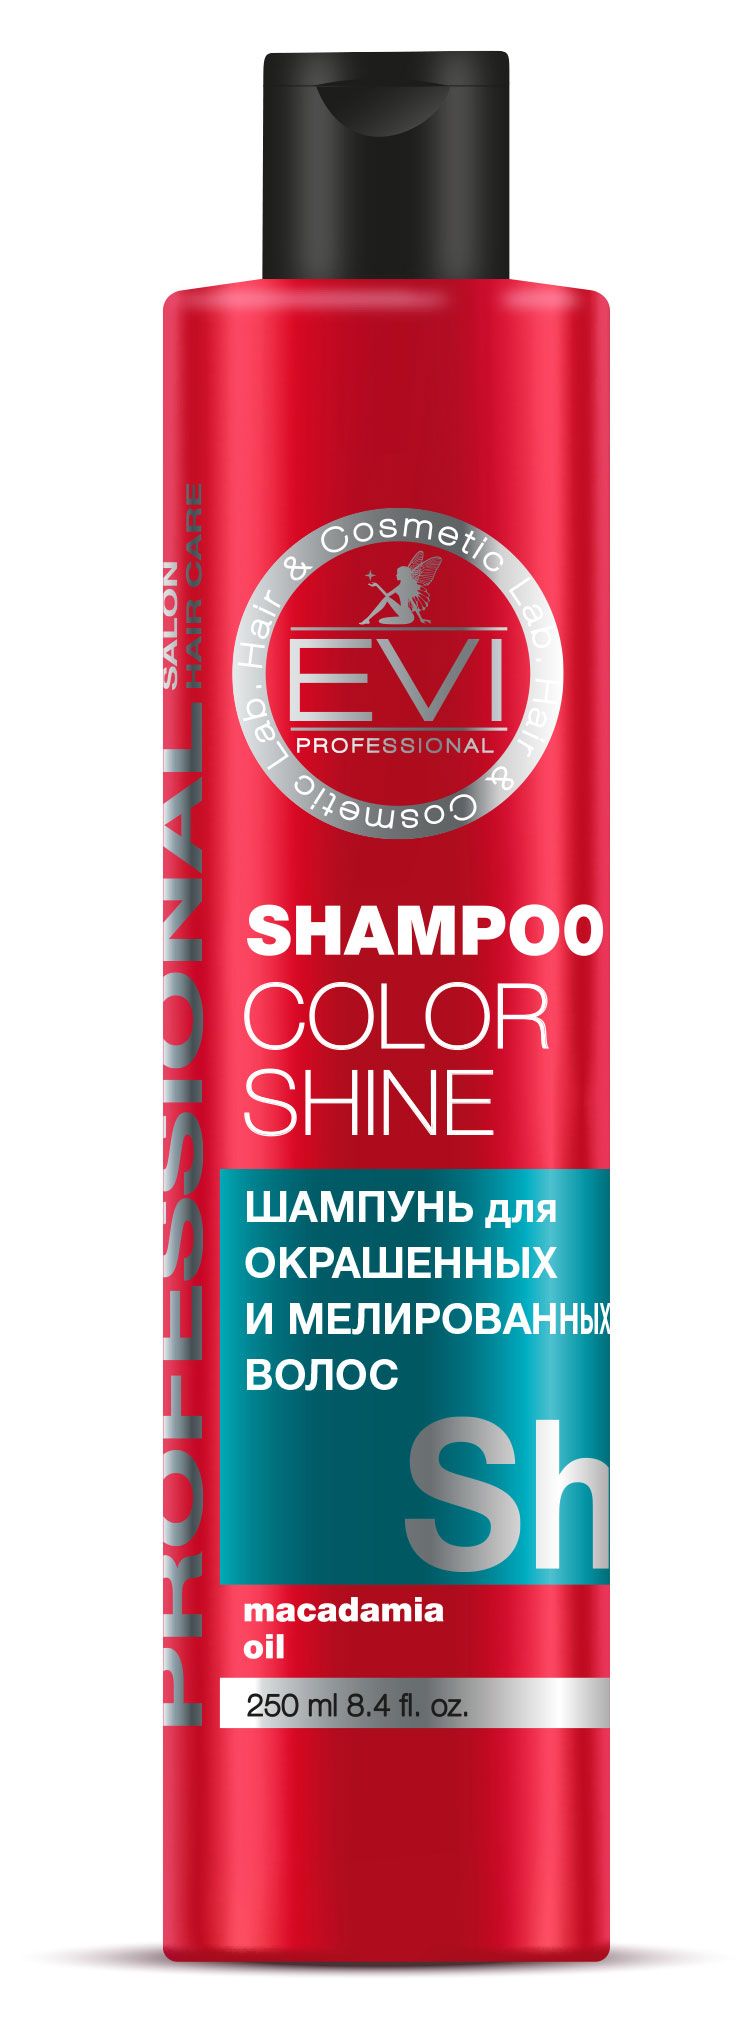 Шампунь для окрашенных и мелированных волос EVI professional Интенсивный уход, 250 мл